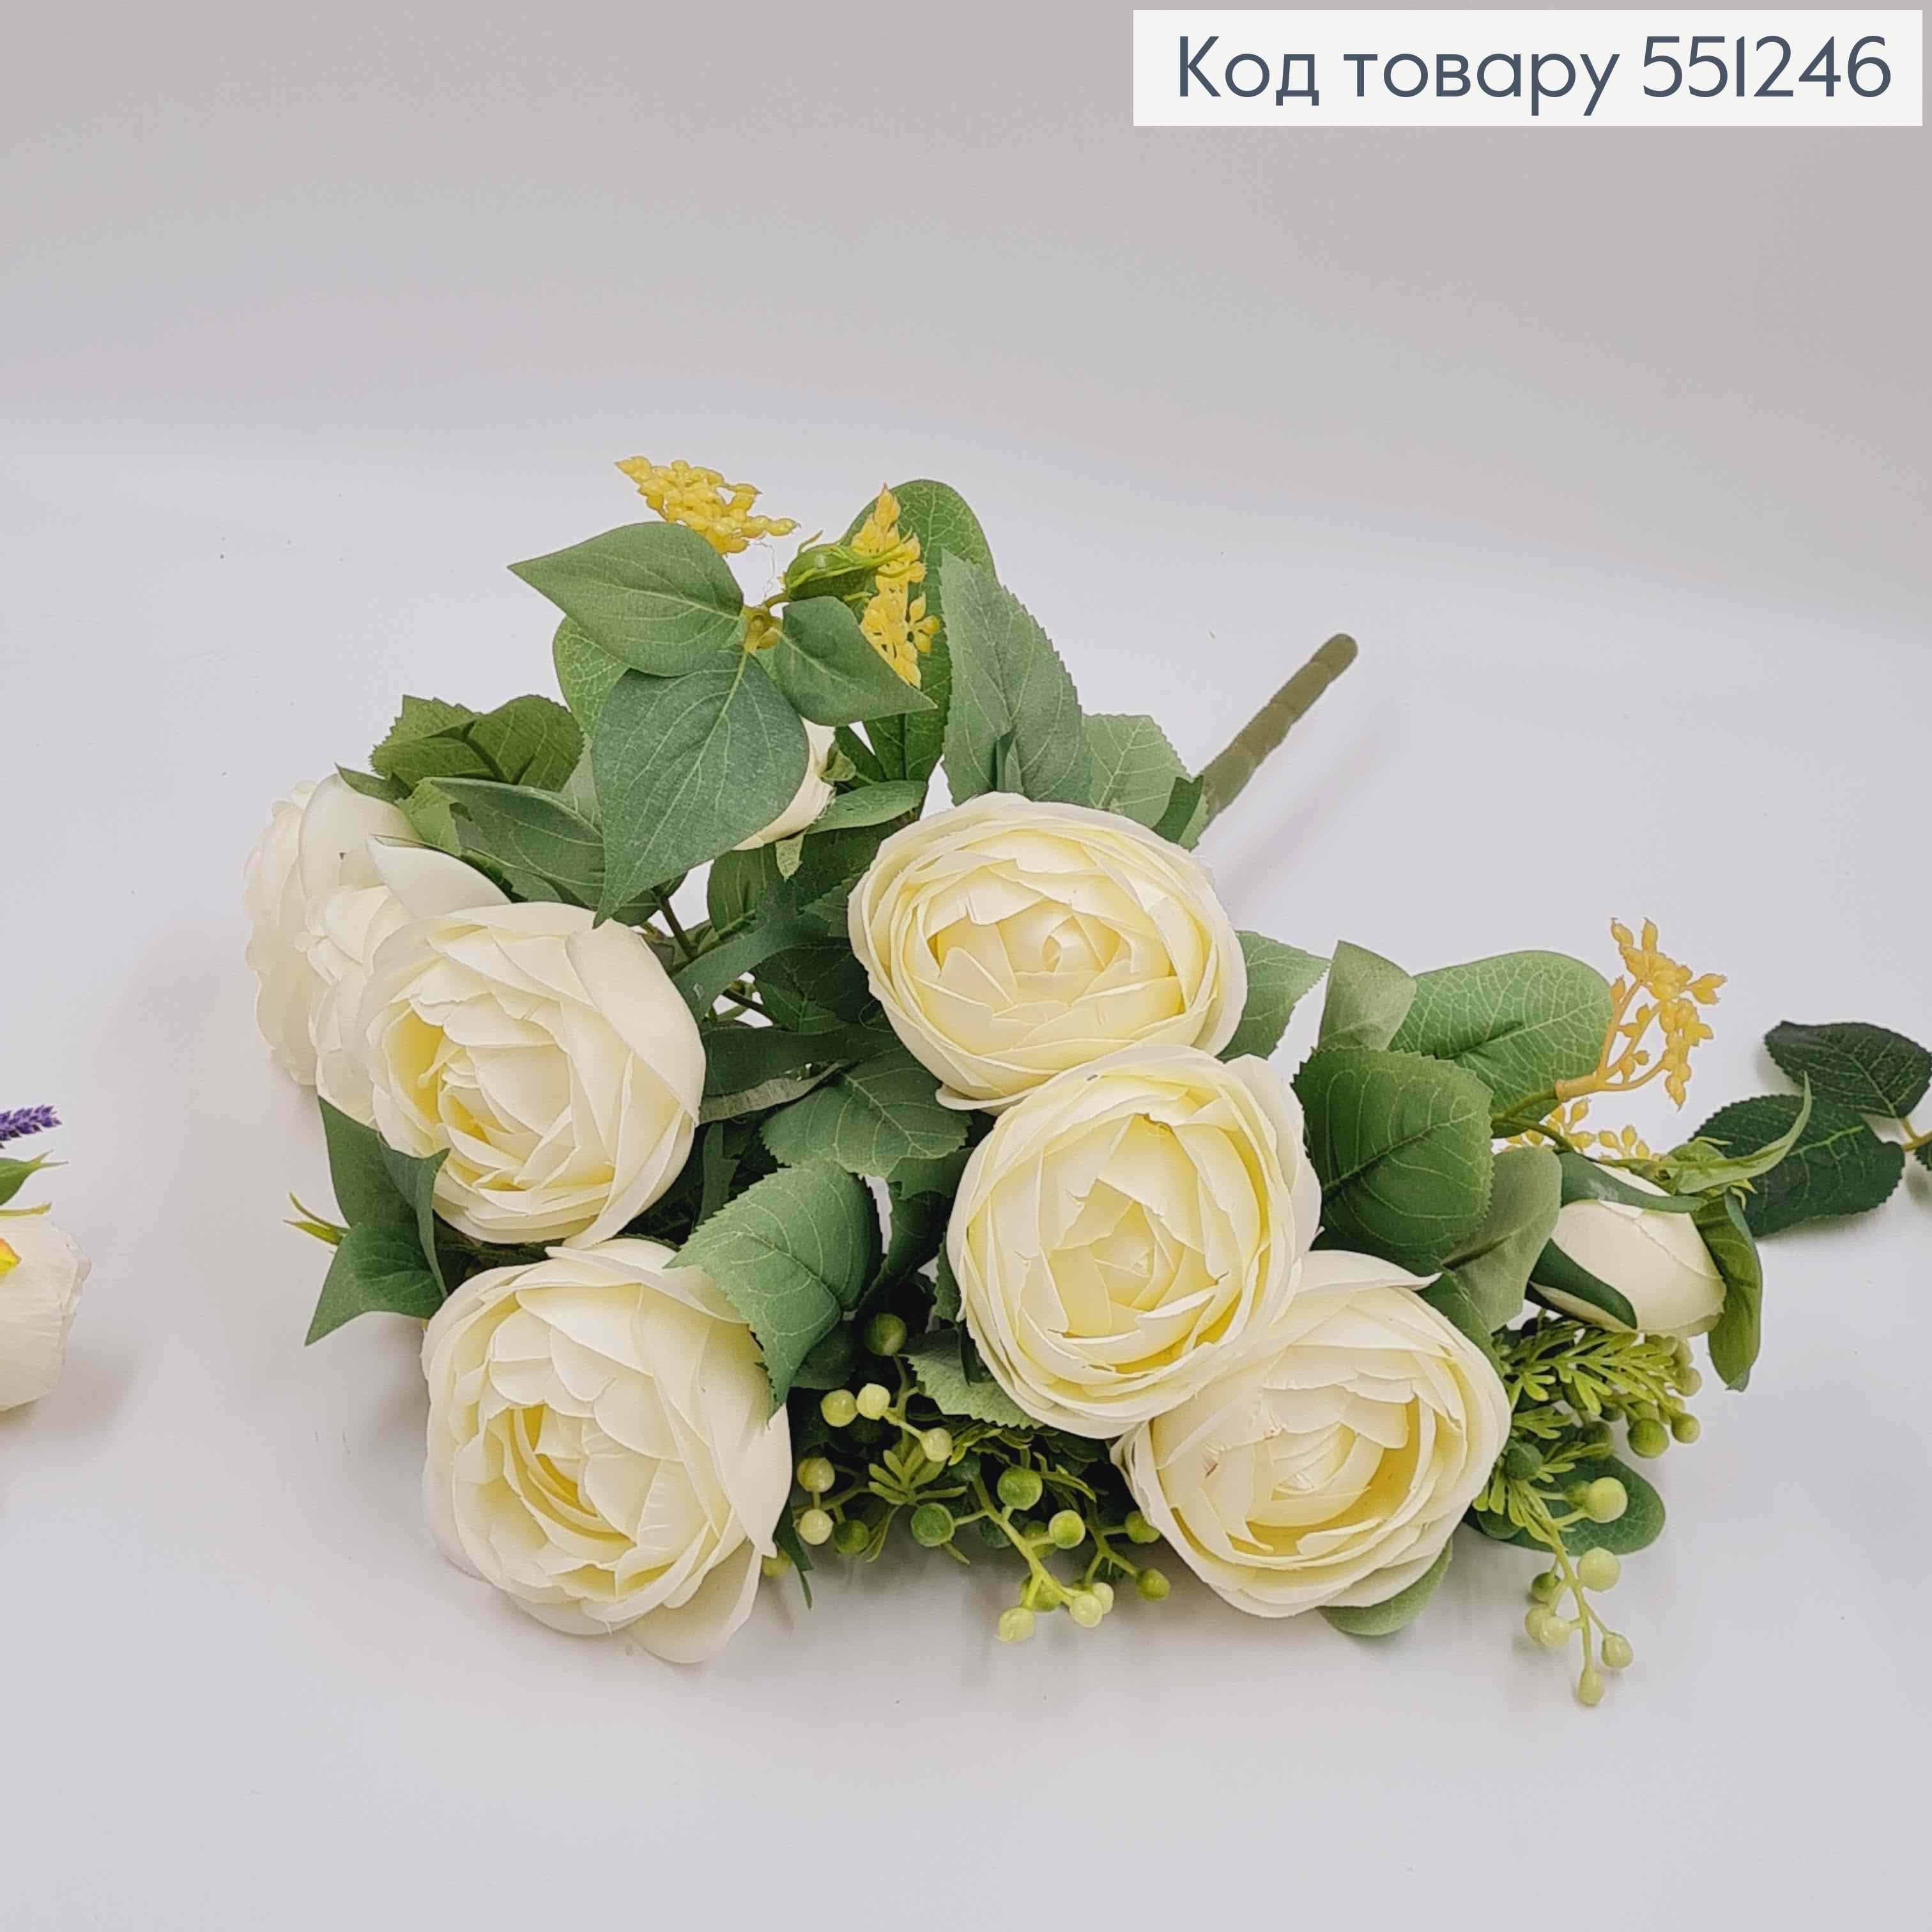 Композиция "Букет АИВОРИ розы Камелия с зеленым декором", высотой 46см 551246 фото 3